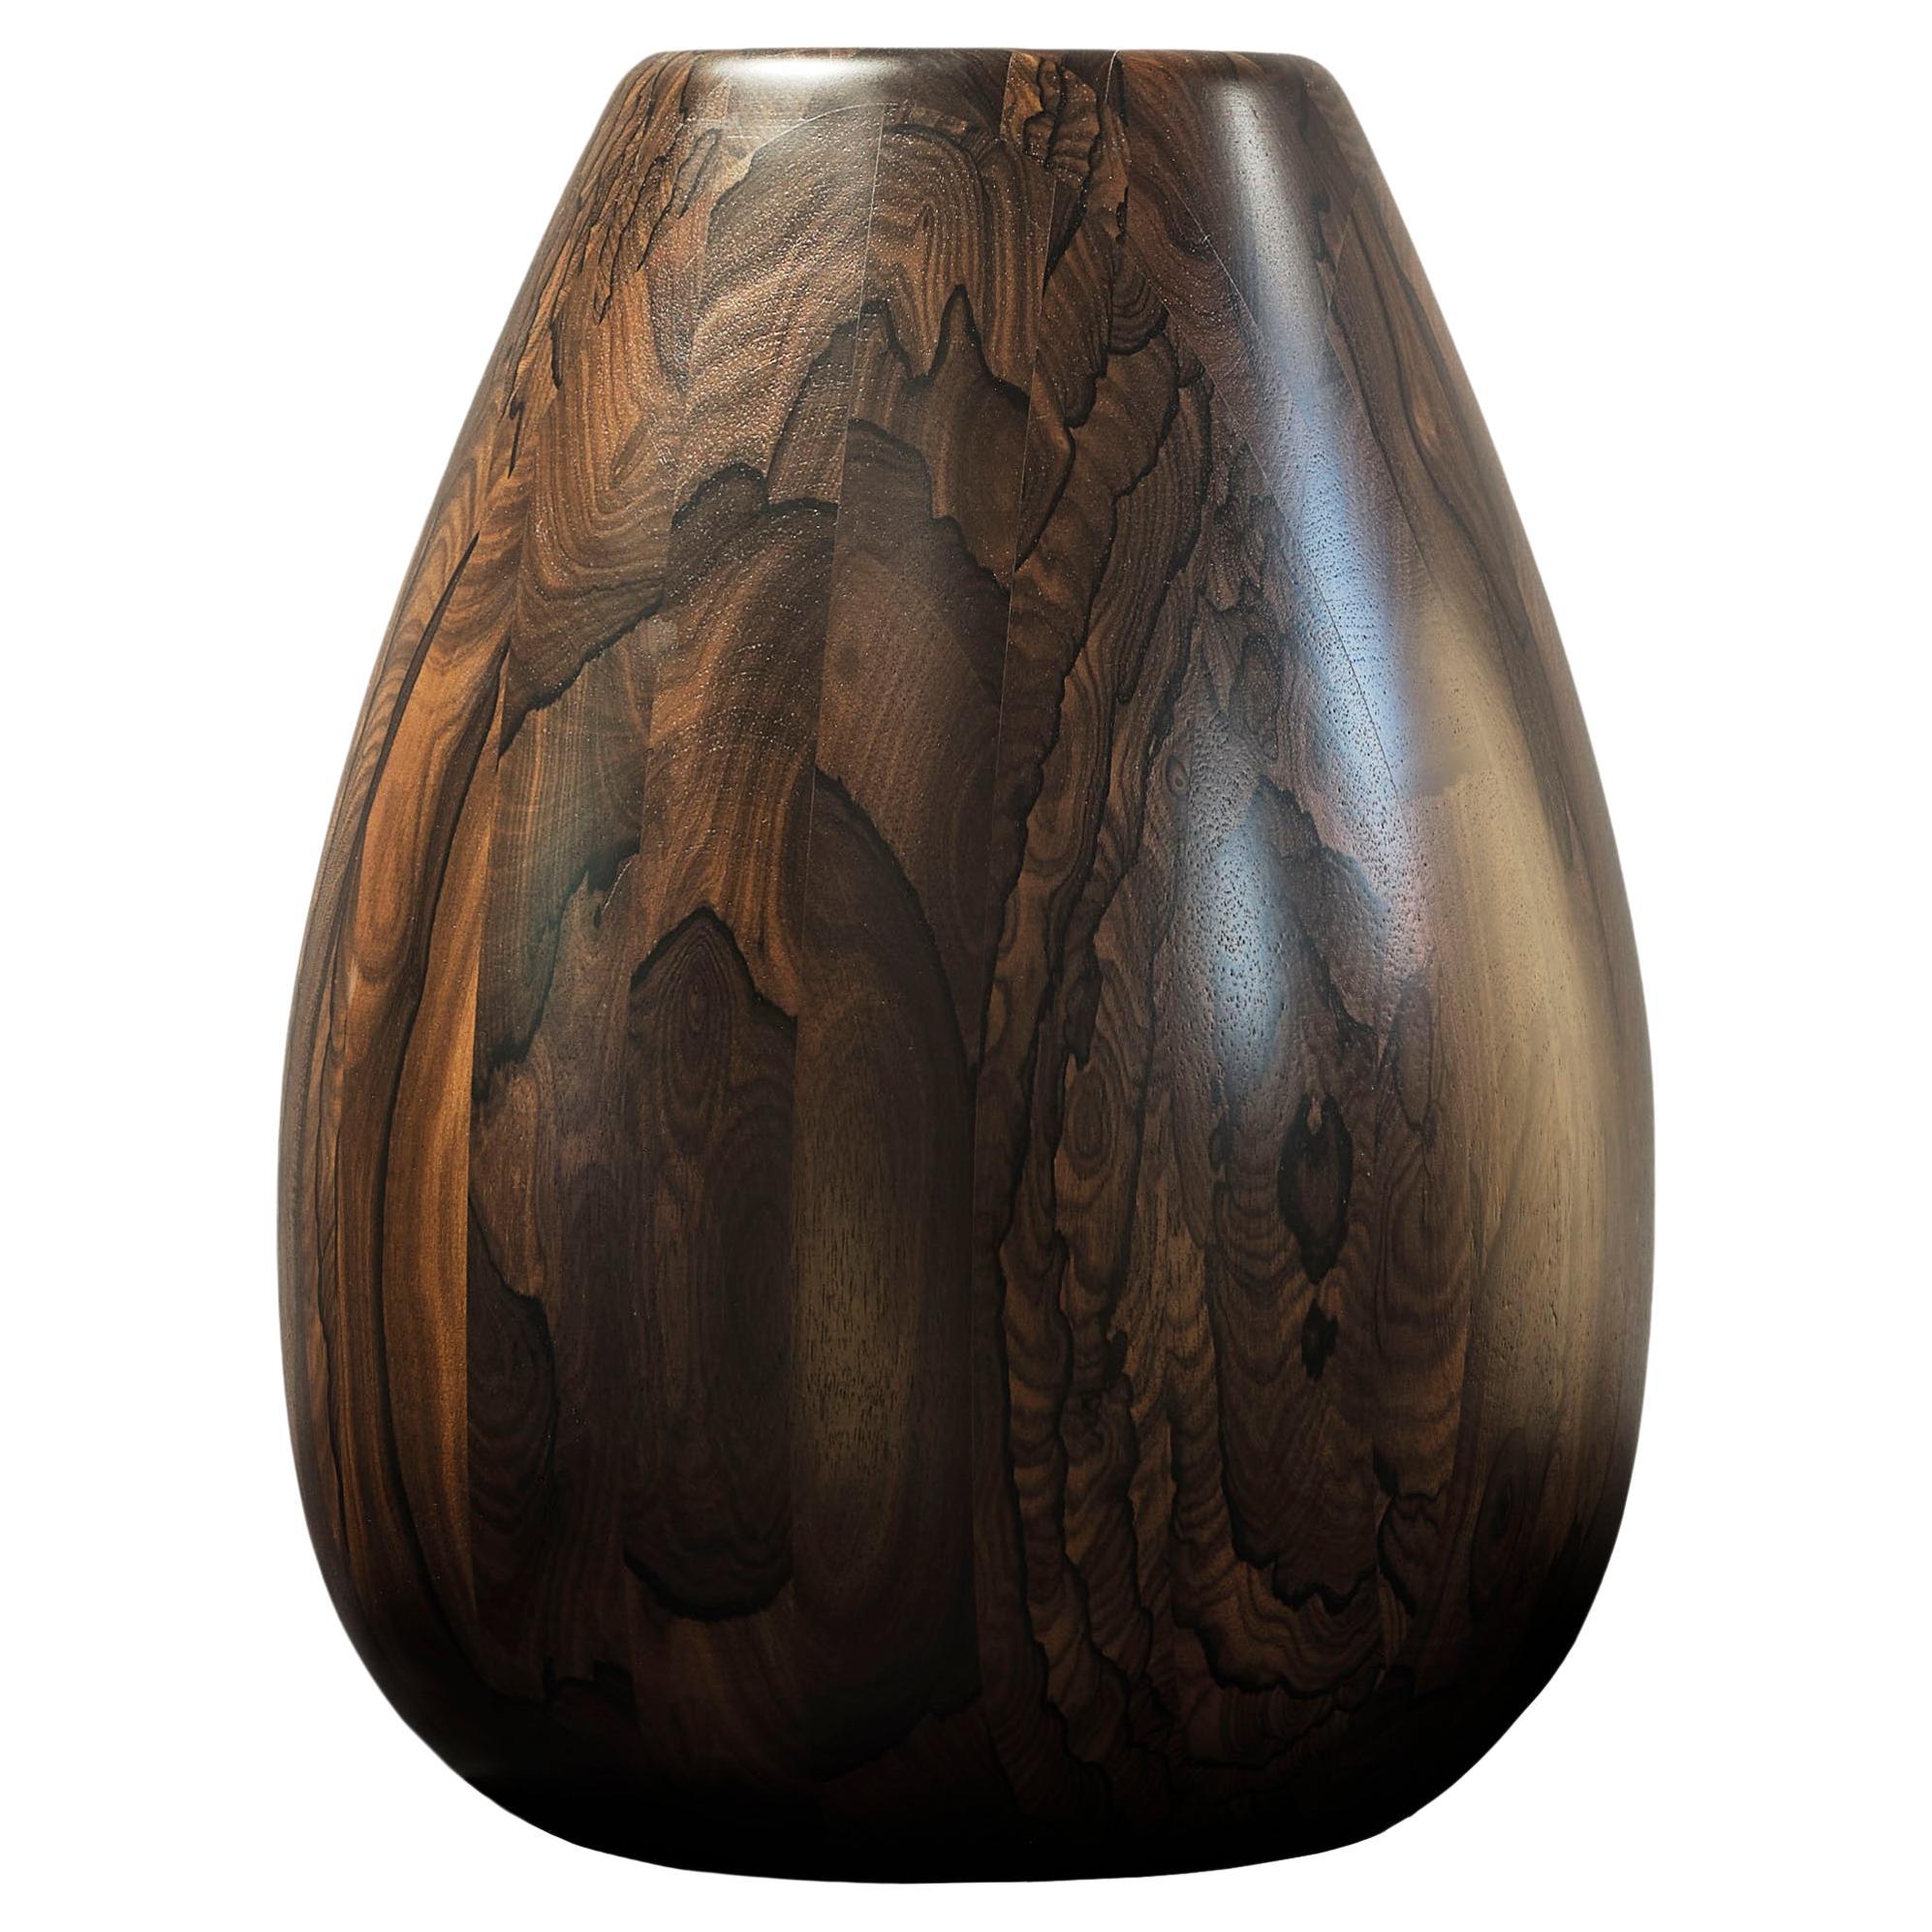 Ziricote Wood Vase h50 design Franco Albini - edit b Officina della Scala For Sale